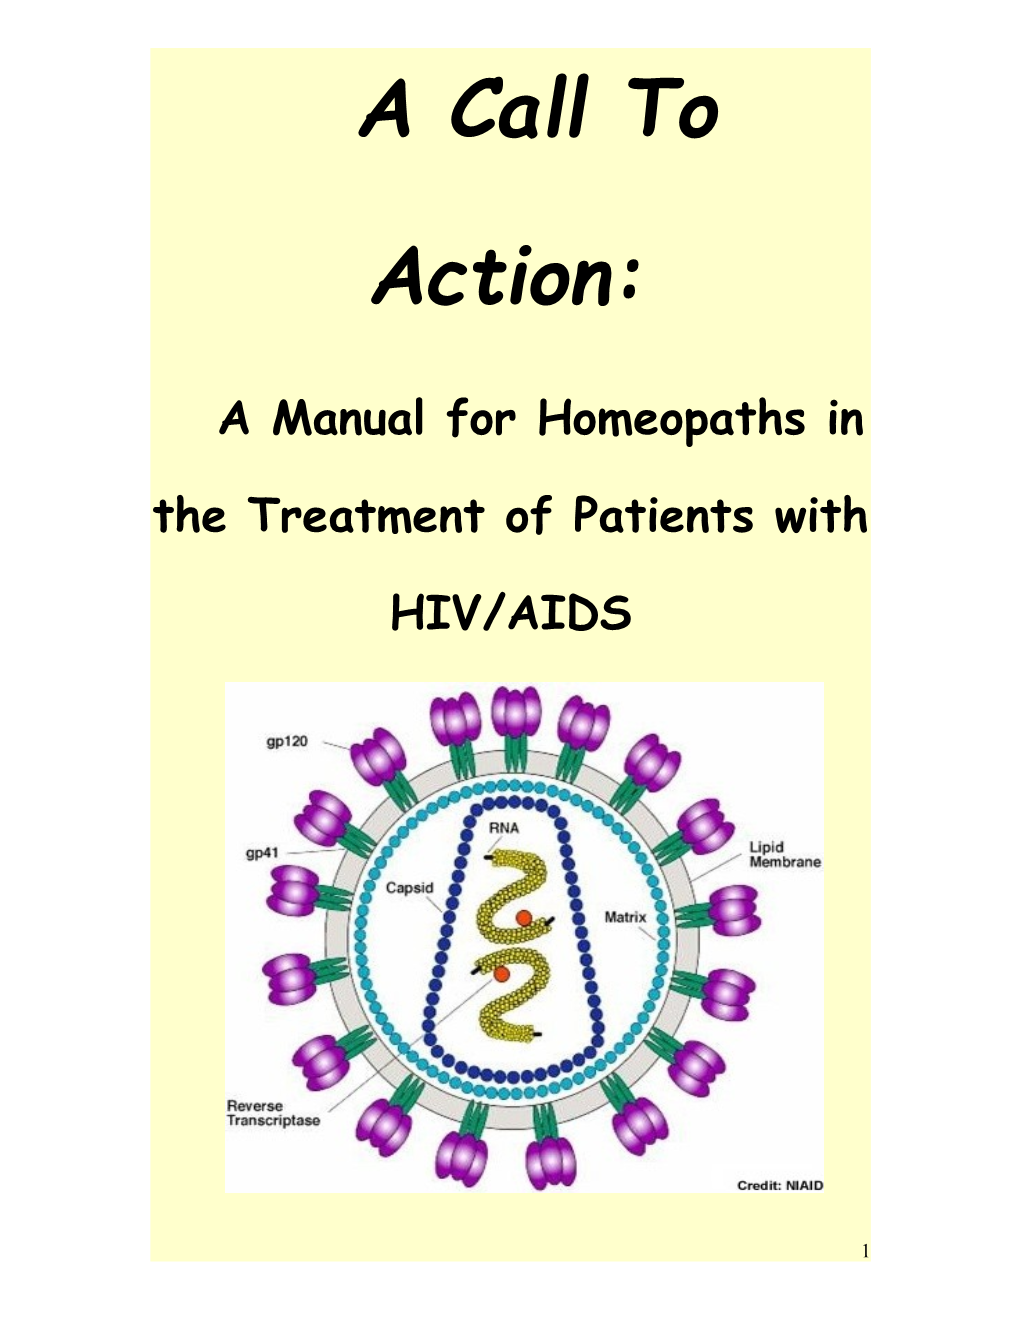 Pathology/Pathogenesis of HIV/AIDS